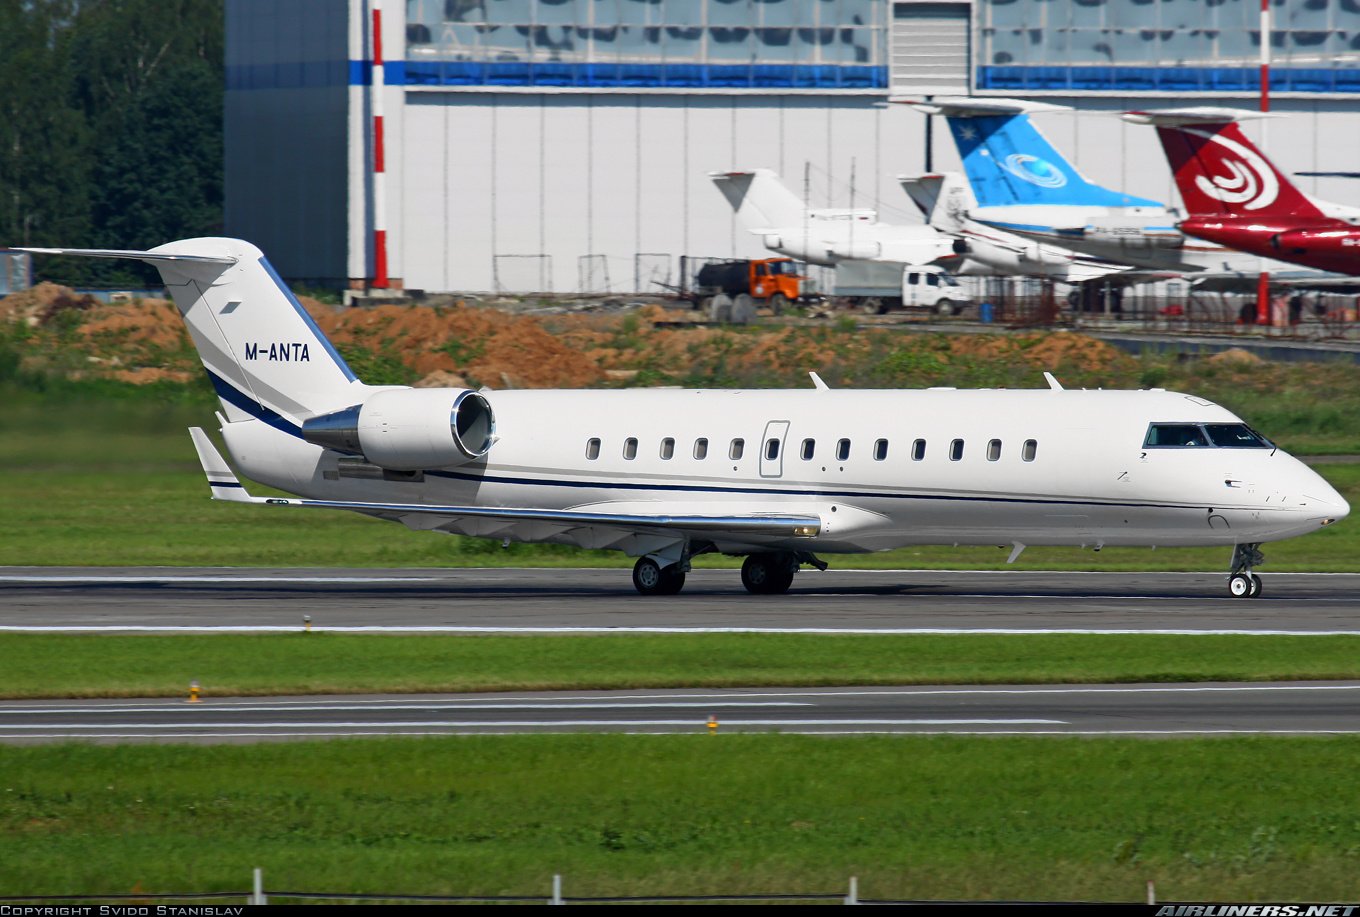 B 19 ru. Bombardier cl600. Bombardier CL-600-2b19 самолет. Canadair CL-600−2b19 Challenger 850. CL-600-2b19.